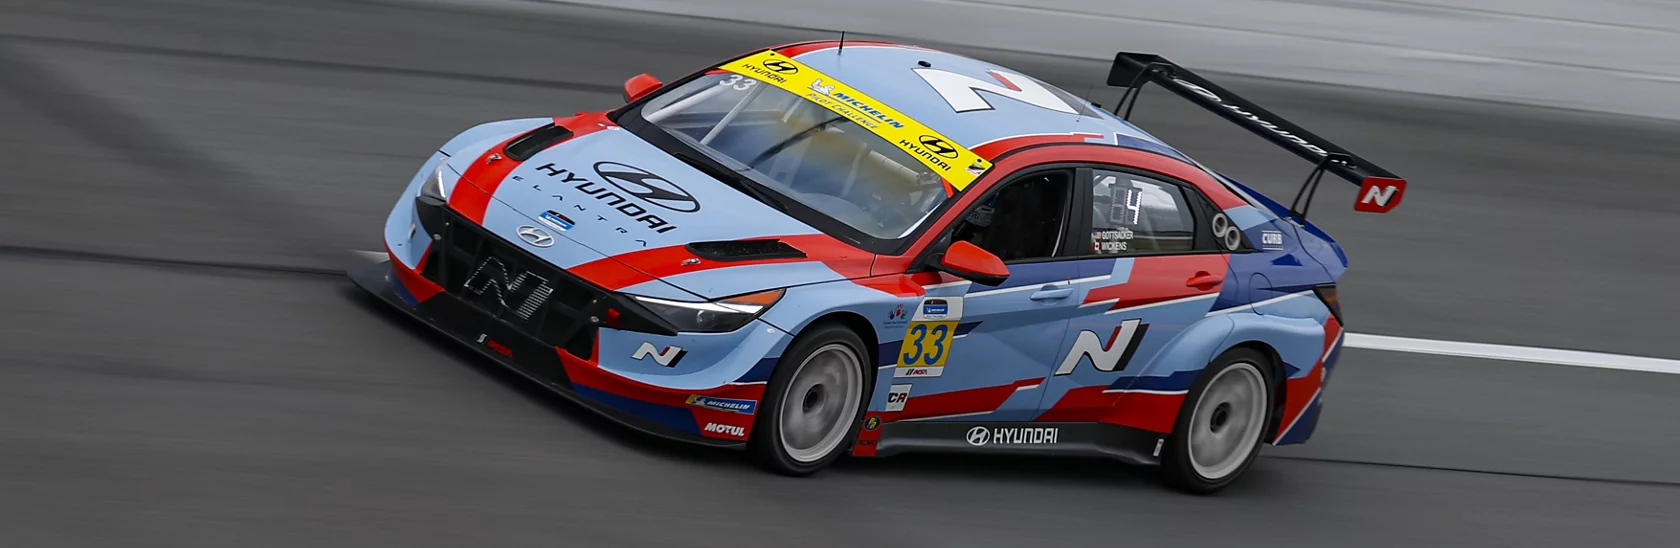 Cronograma de la categoría Hyundai Motorsports TCR: Desafío de pilotos IMSA Michelin 2023.